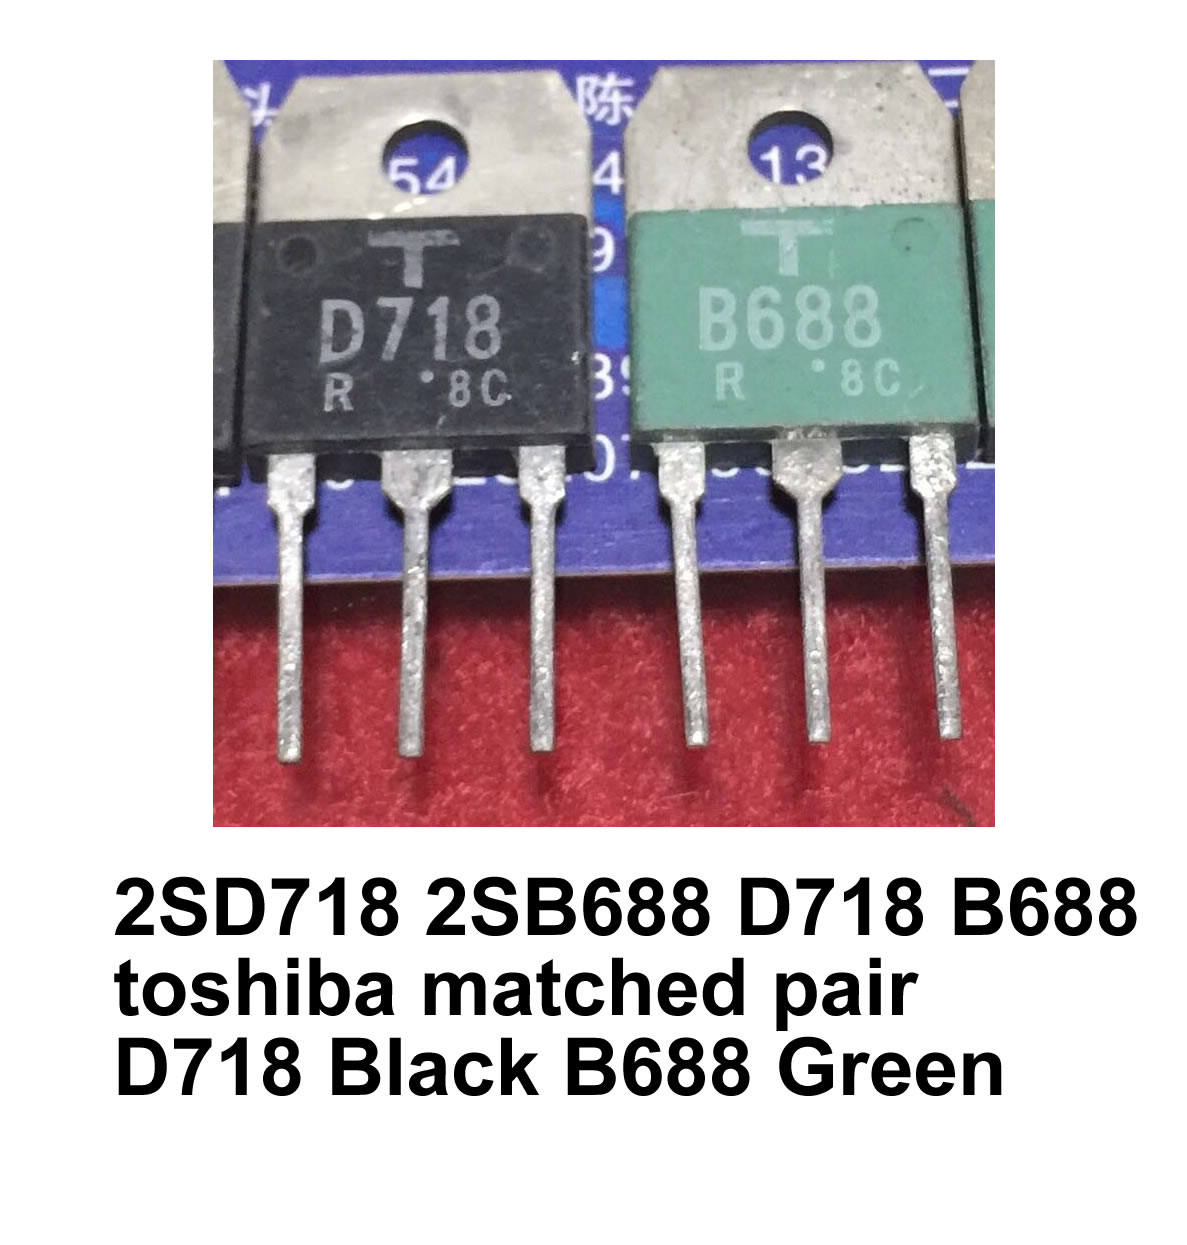 2SD718 2SB688 D718 B688 toshiba matched pair